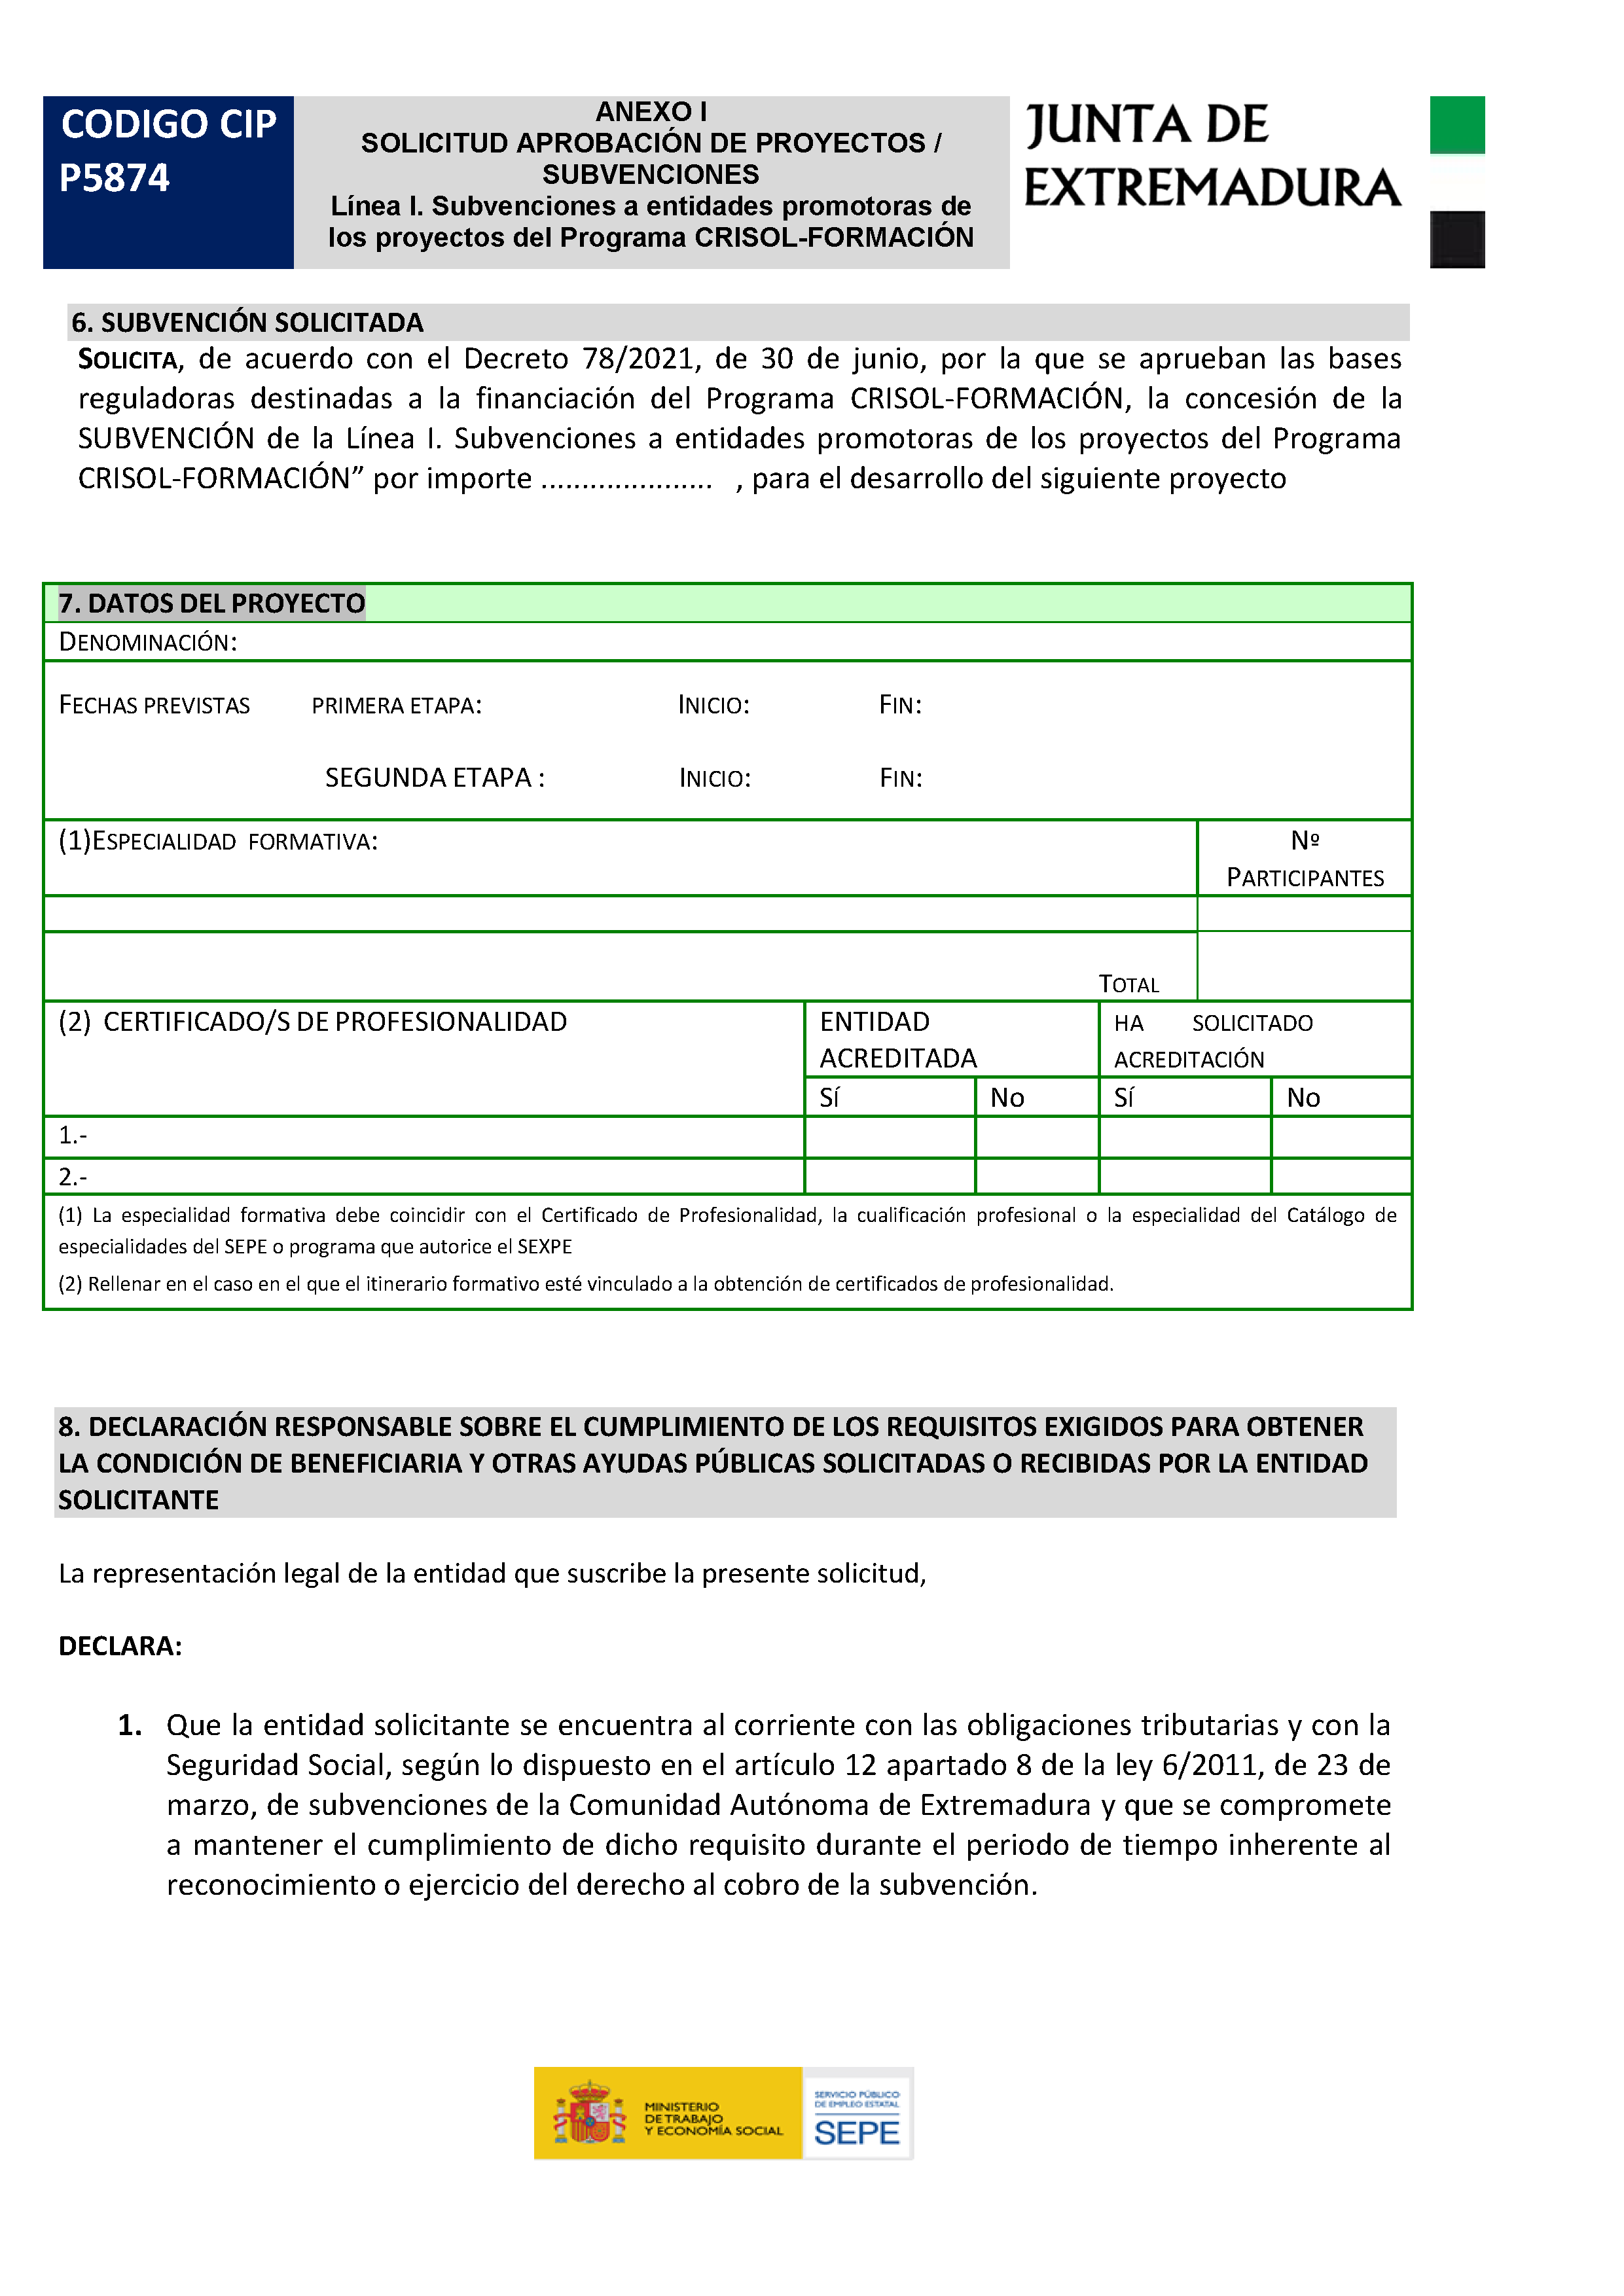 ANEXO SOLICITUD APROVACION DE PROYECTOS / SUBVENCIONES Pag 2